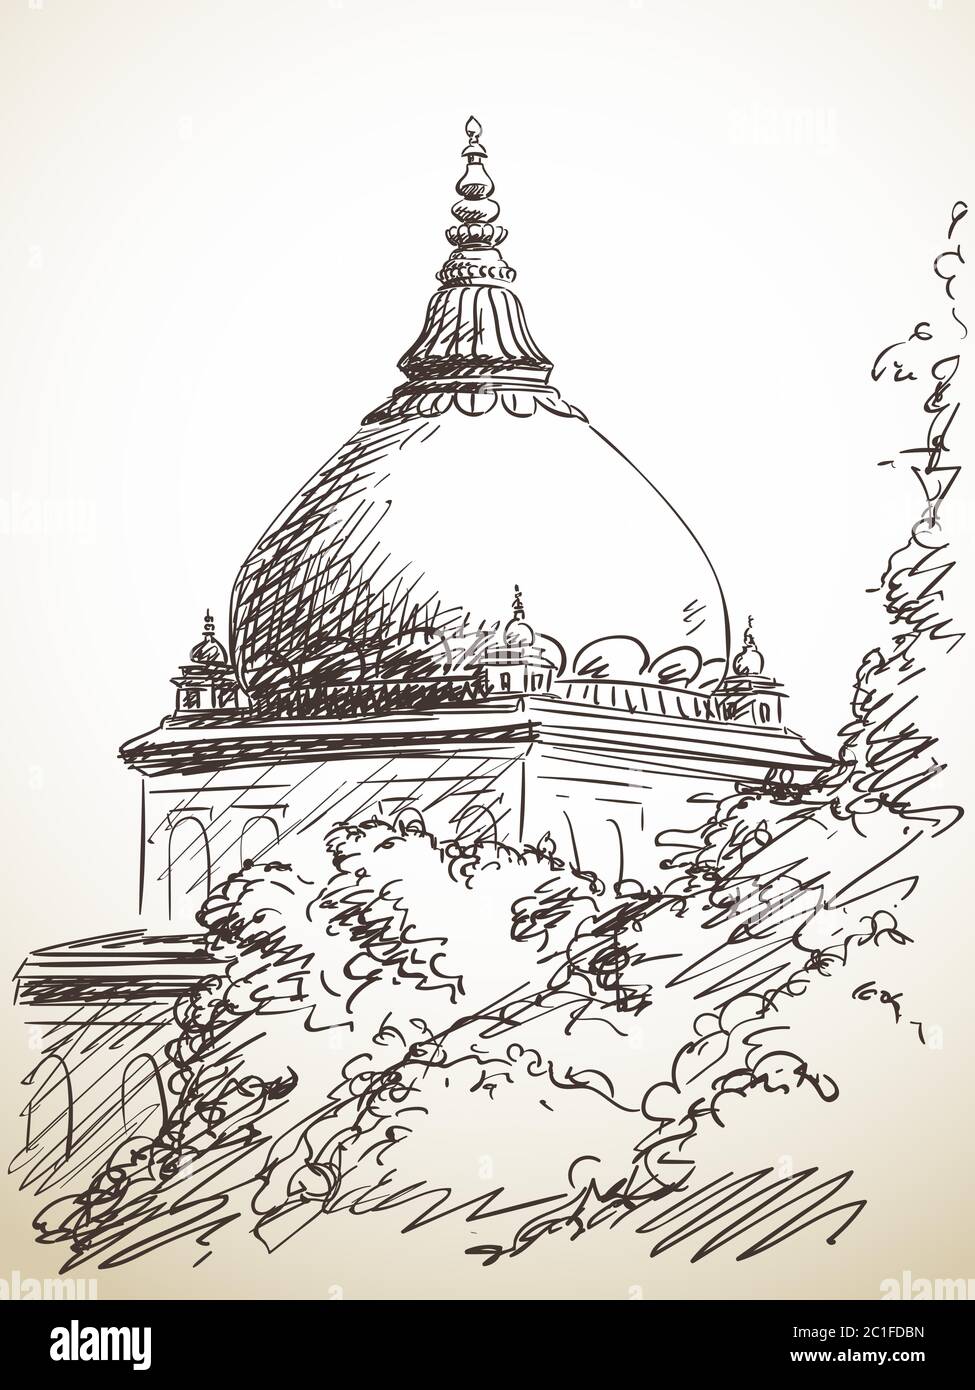 Disegno del tempio dietro l'albero, illustrazione disegnata a mano Illustrazione Vettoriale